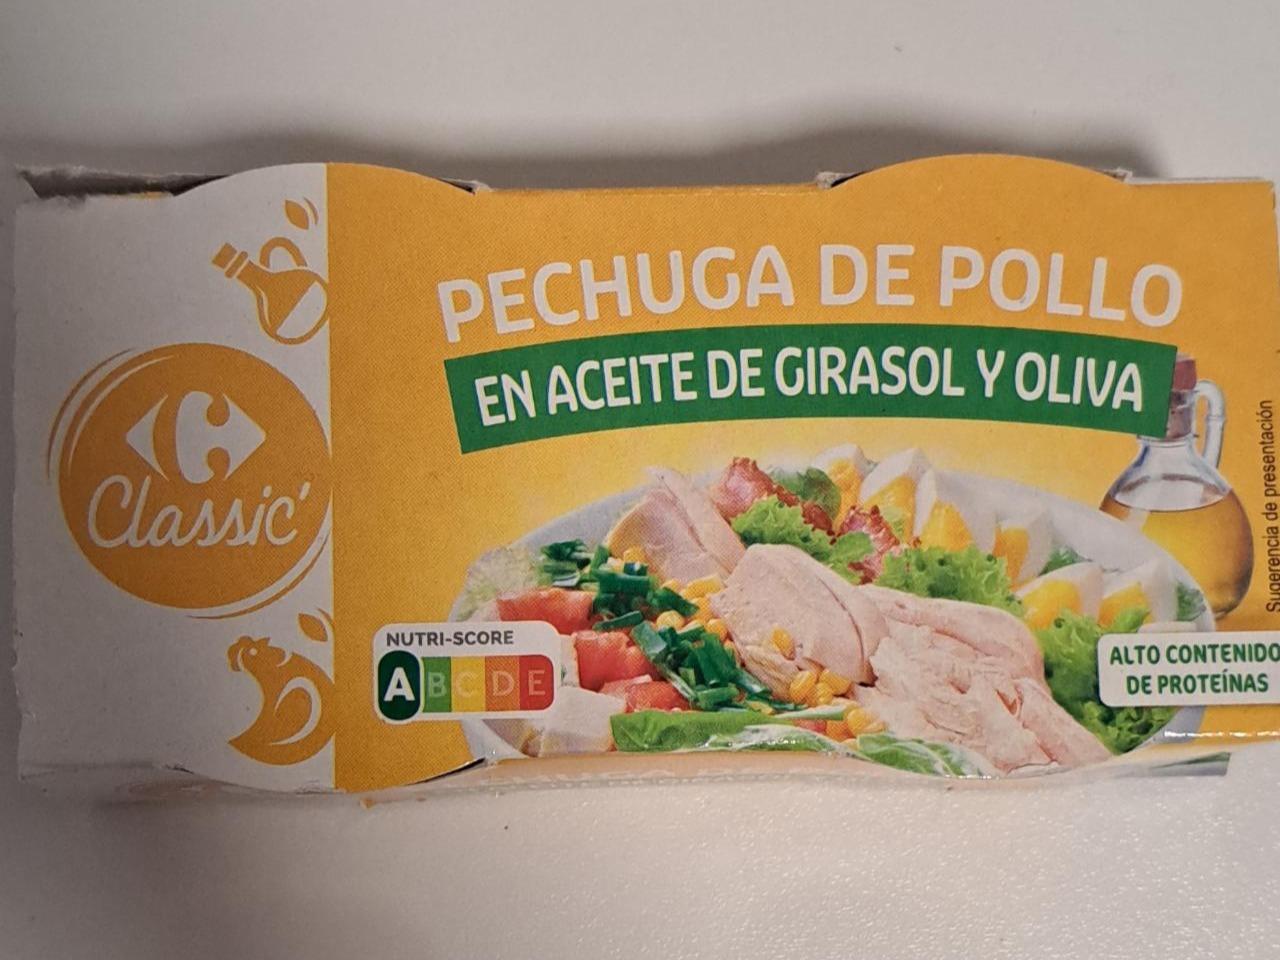 Fotografie - Pechuga de pollo en aceite de girasol y oliva C Classic